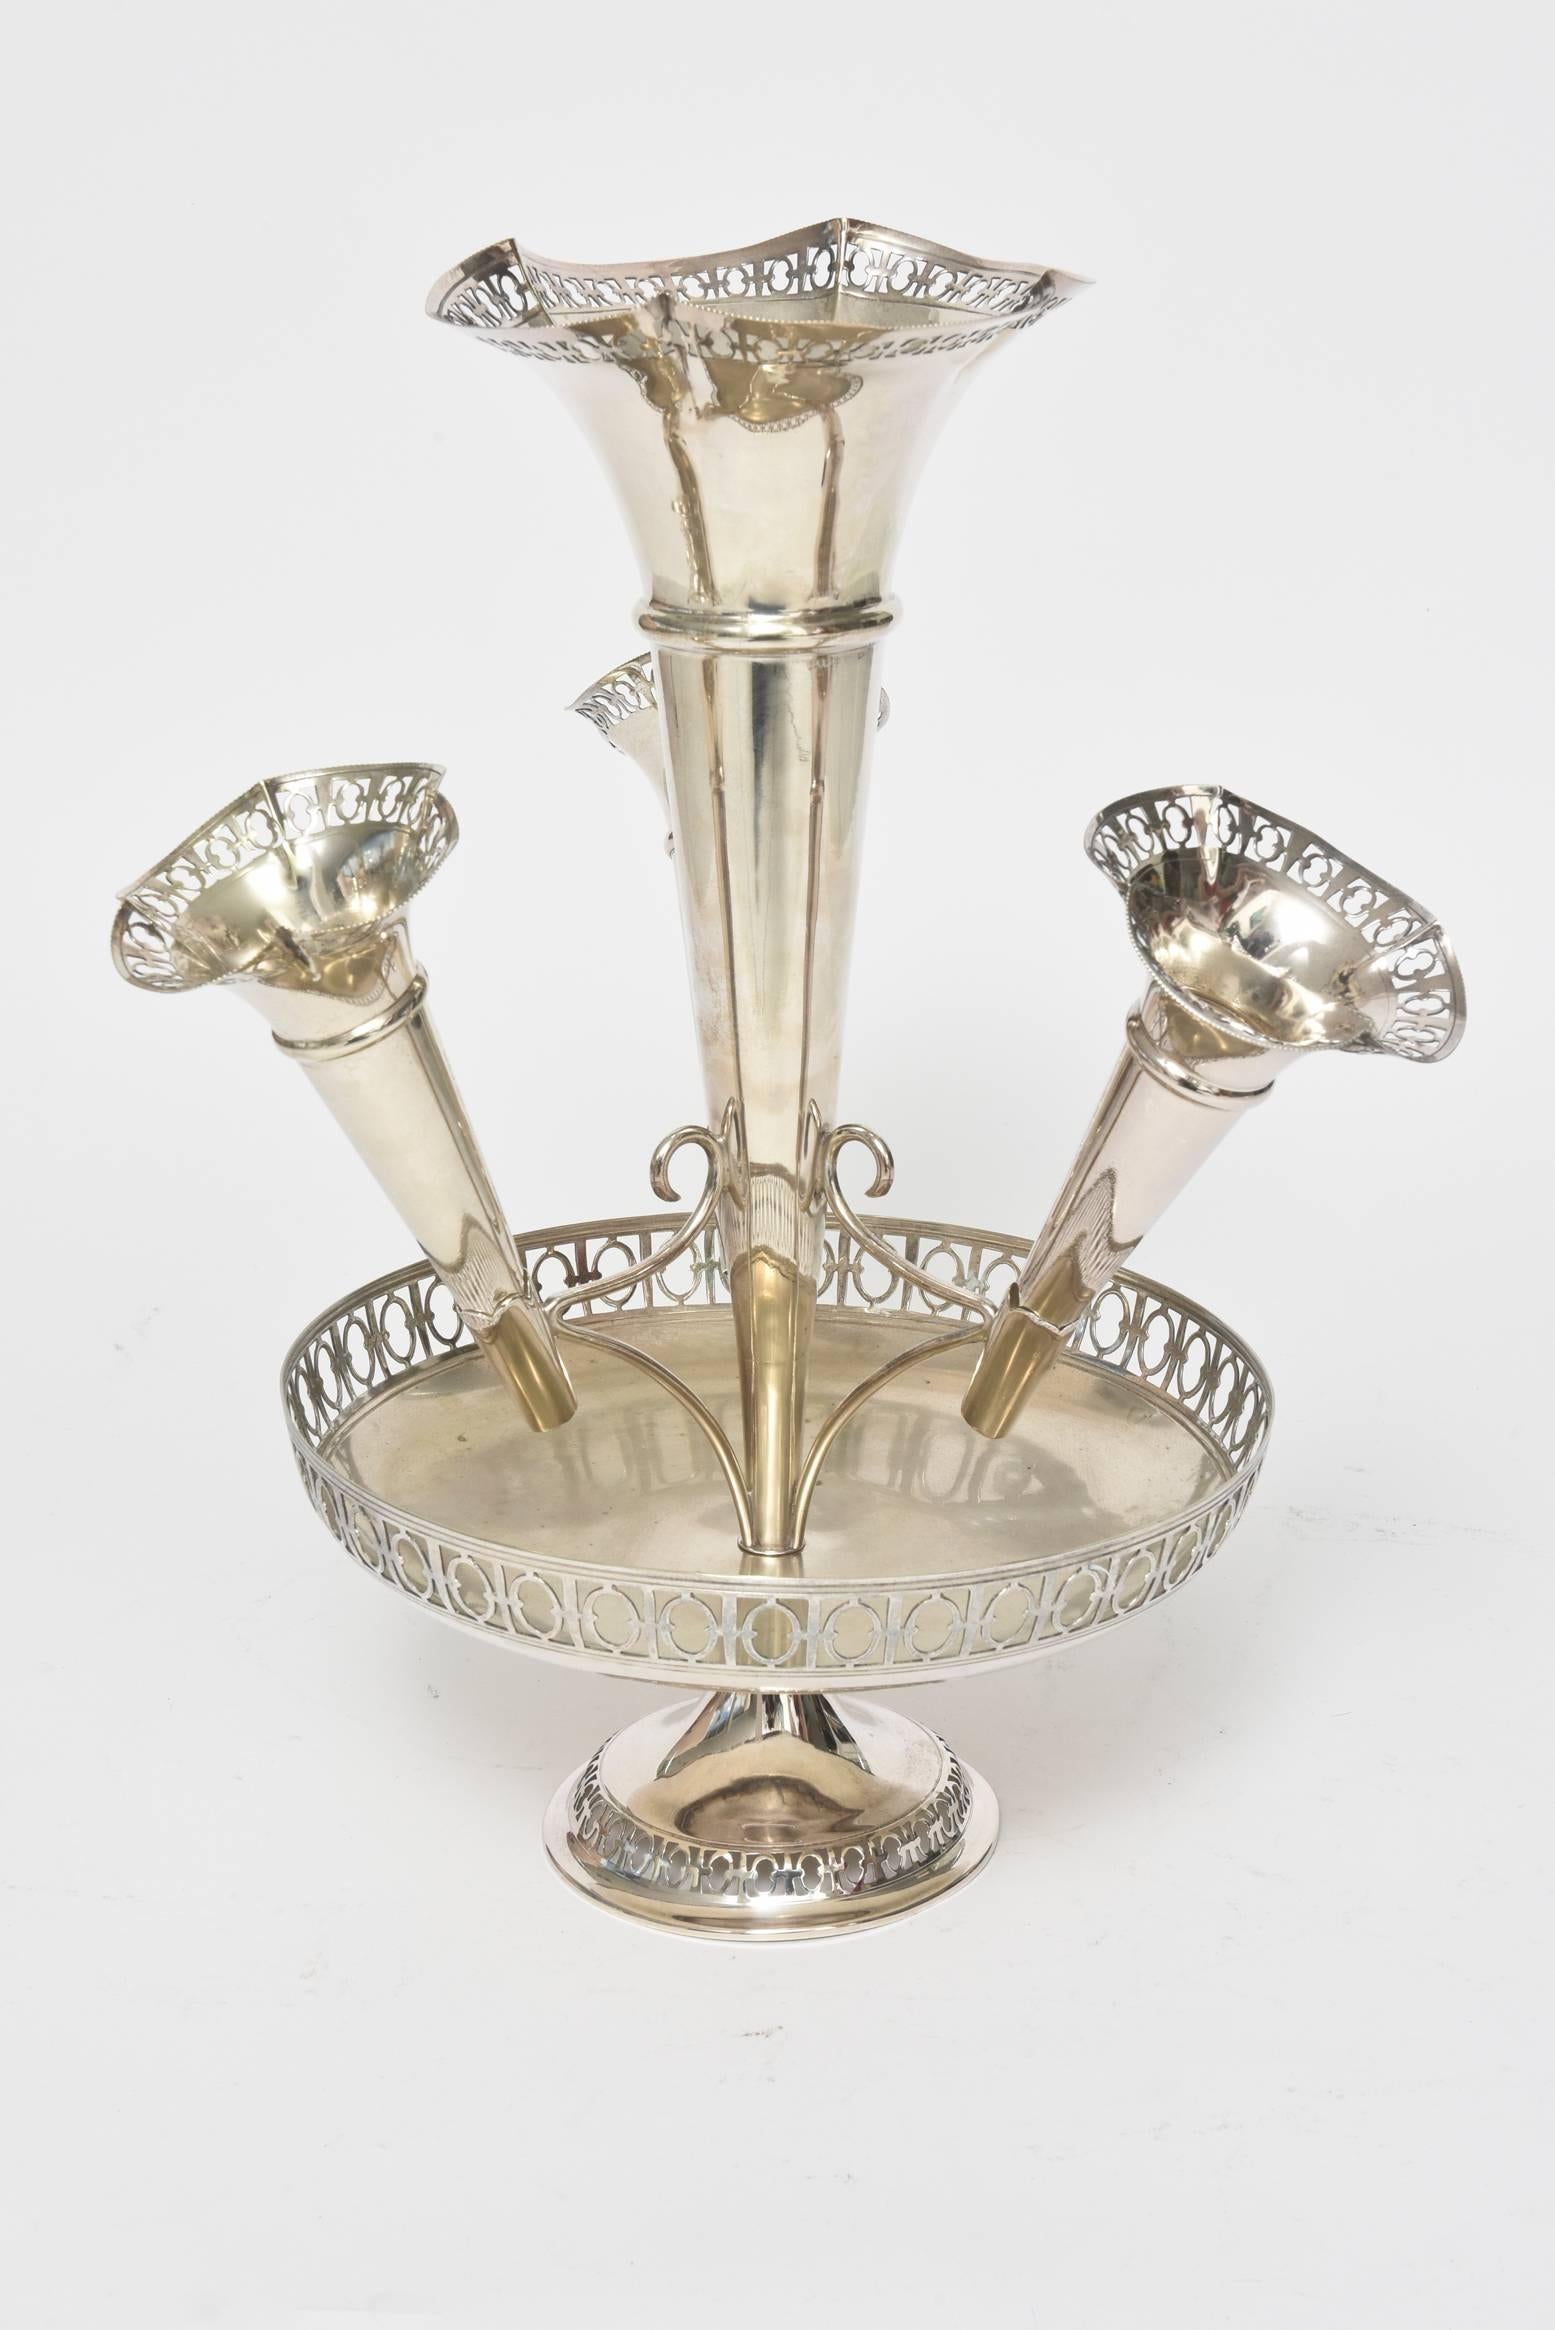 Diese schöne Epergne wurde von S.J. hergestellt. Levi & Co. (1901-1938) in Birmingham, England, zu Beginn des 20. Jahrhunderts.  Dieses beeindruckende Stück aus Silberblech besteht aus einer großen Trompetenvase in der Mitte und 3 kleineren Vasen,